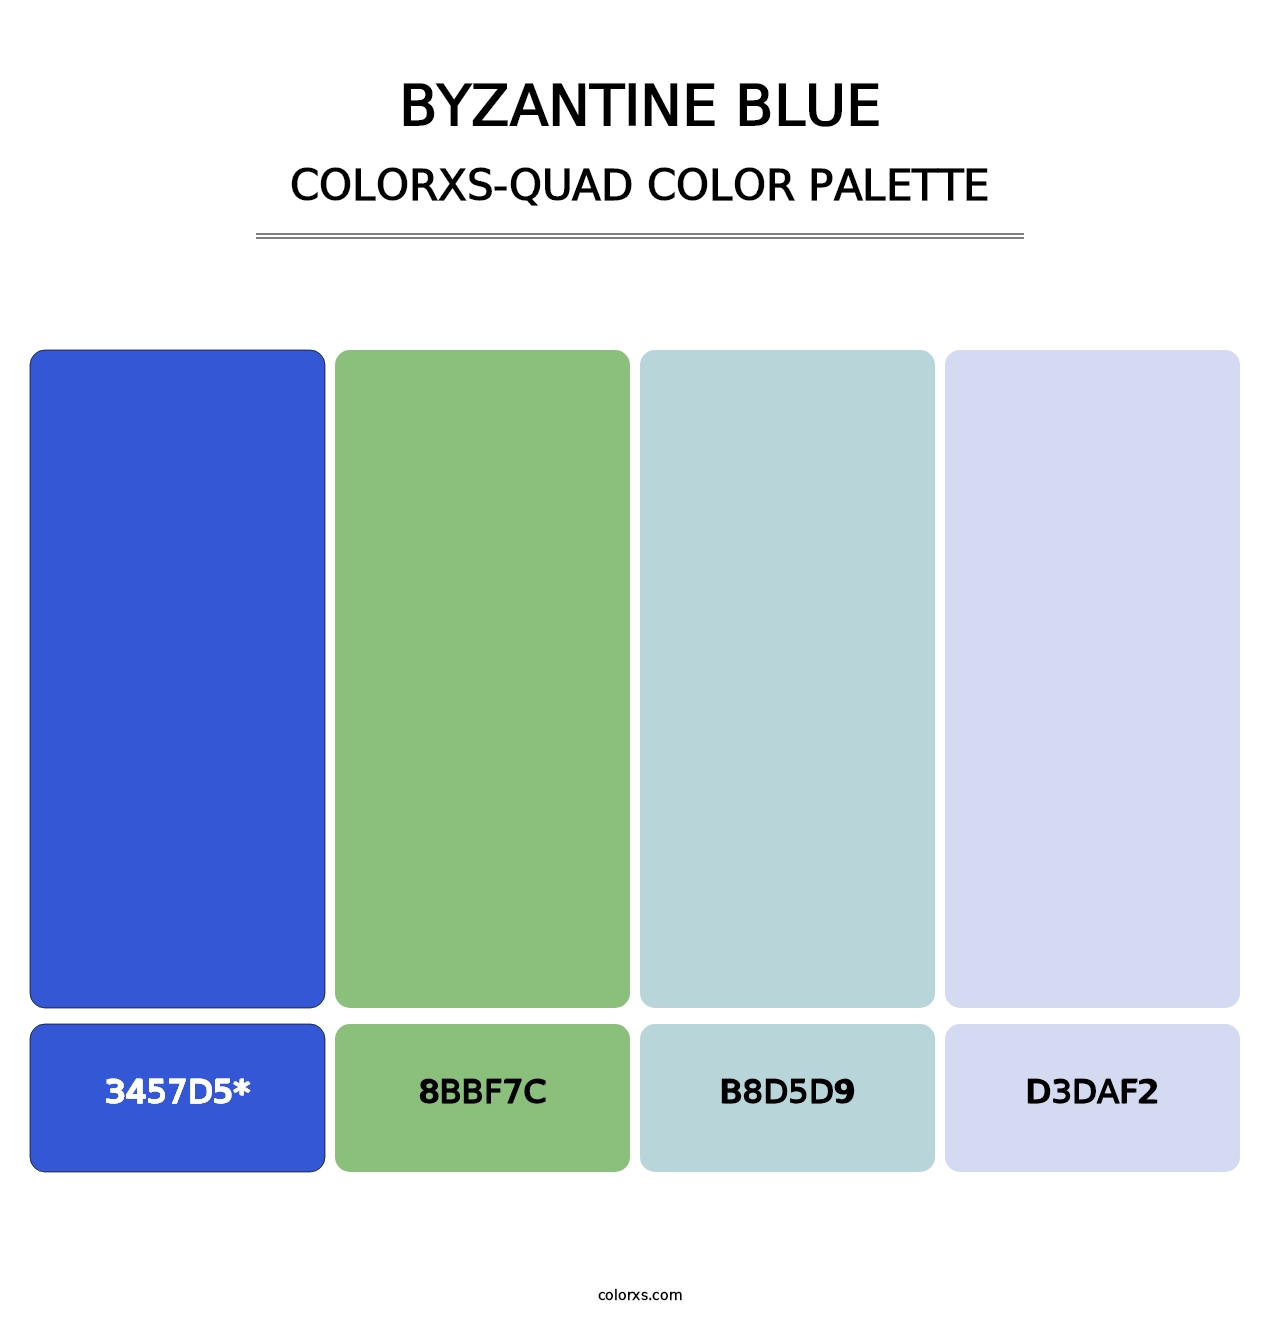 Byzantine Blue - Colorxs Quad Palette